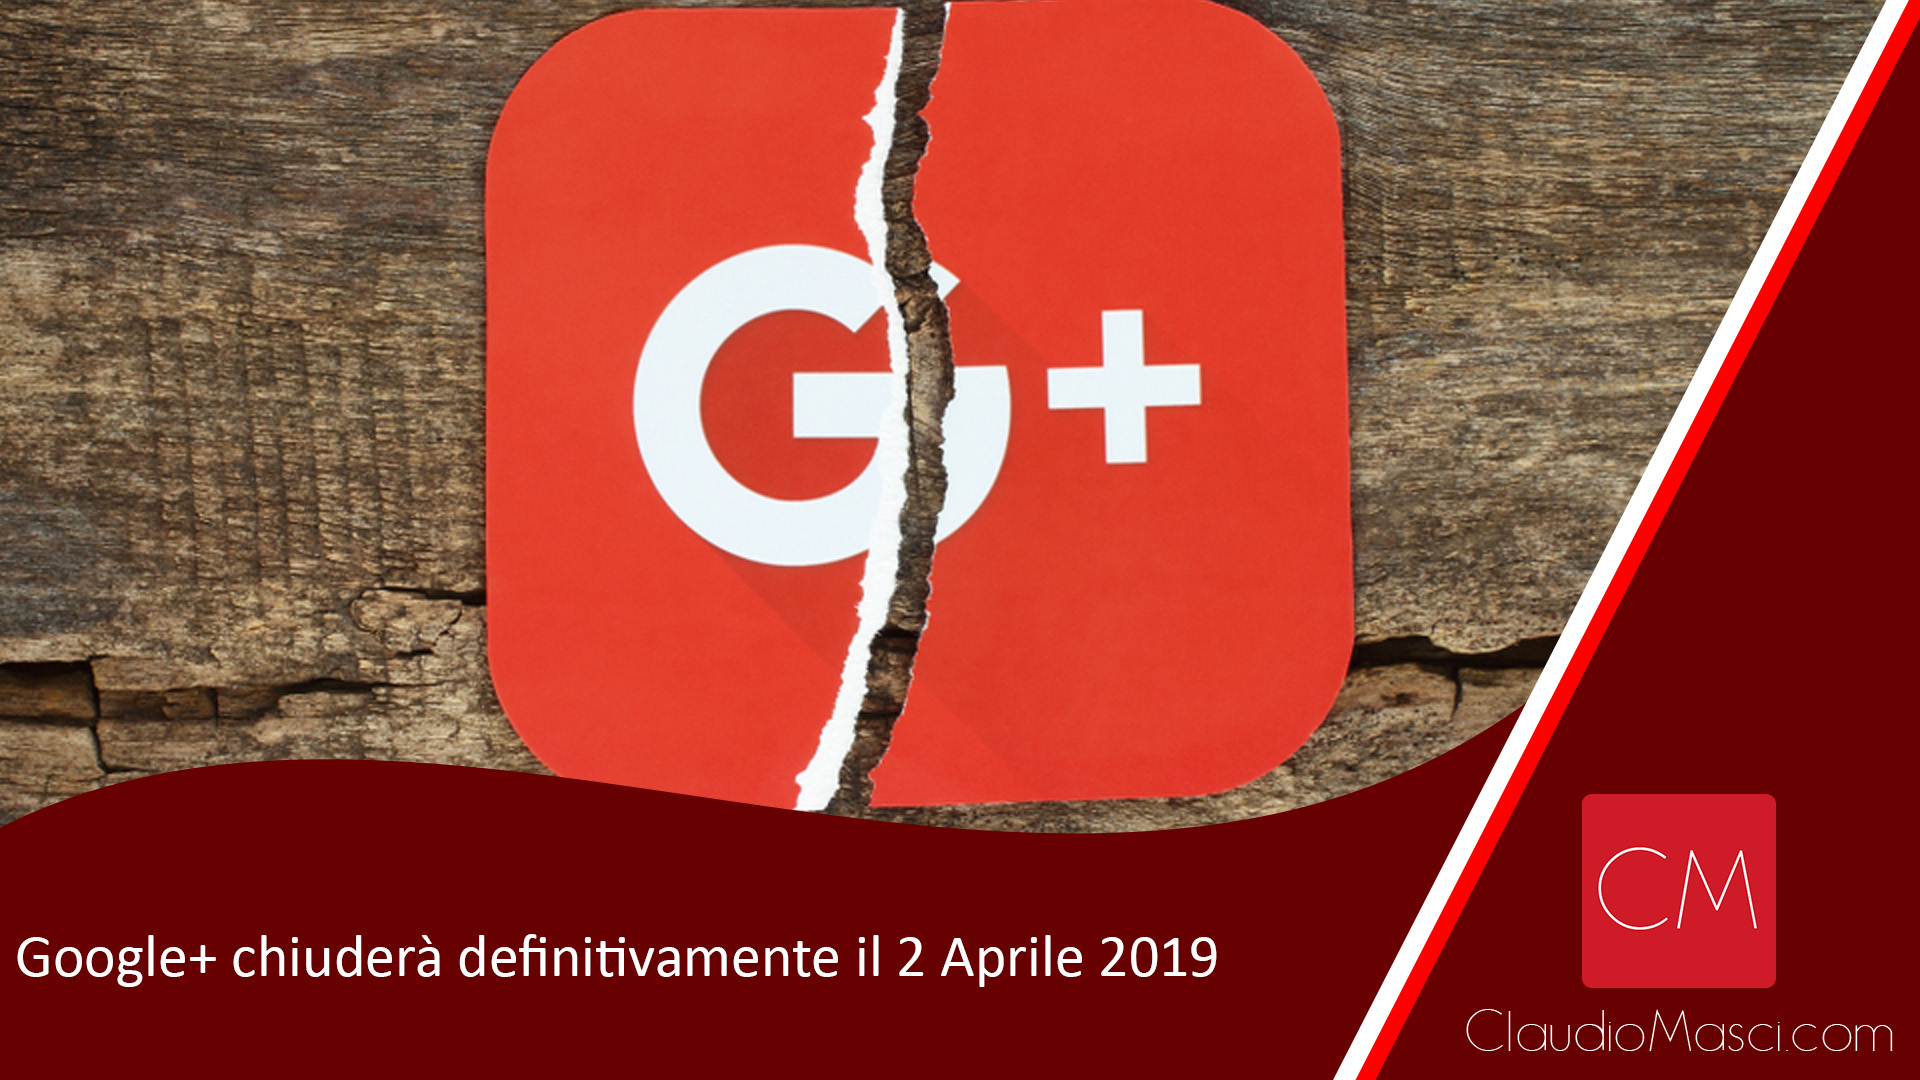 Google+ chiuderà definitivamente il 2 Aprile 2019